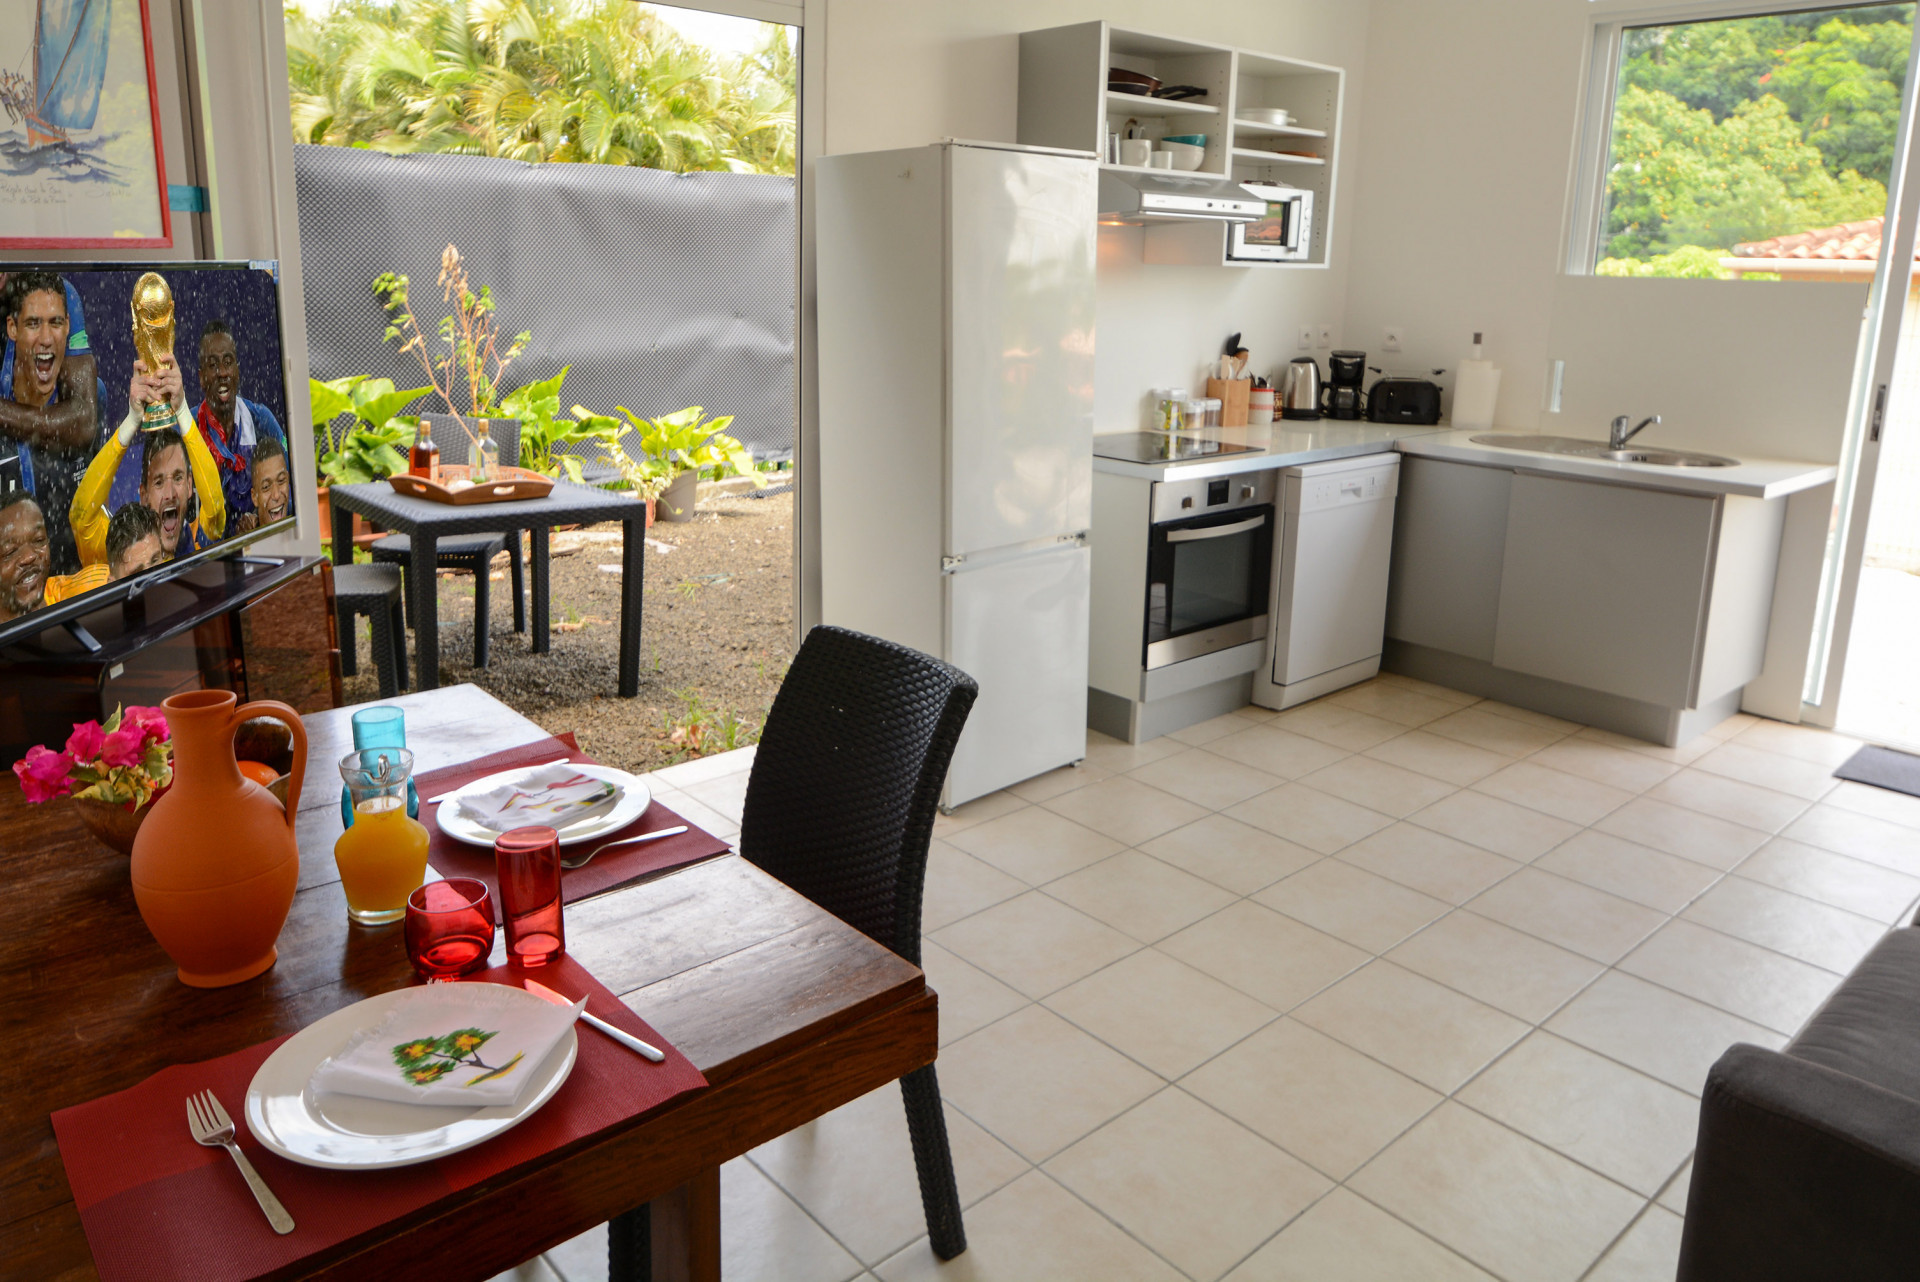 BEL'VAKANS F2 Rental Martinique apartment in Anse à l'Ane Trois Ilets - 